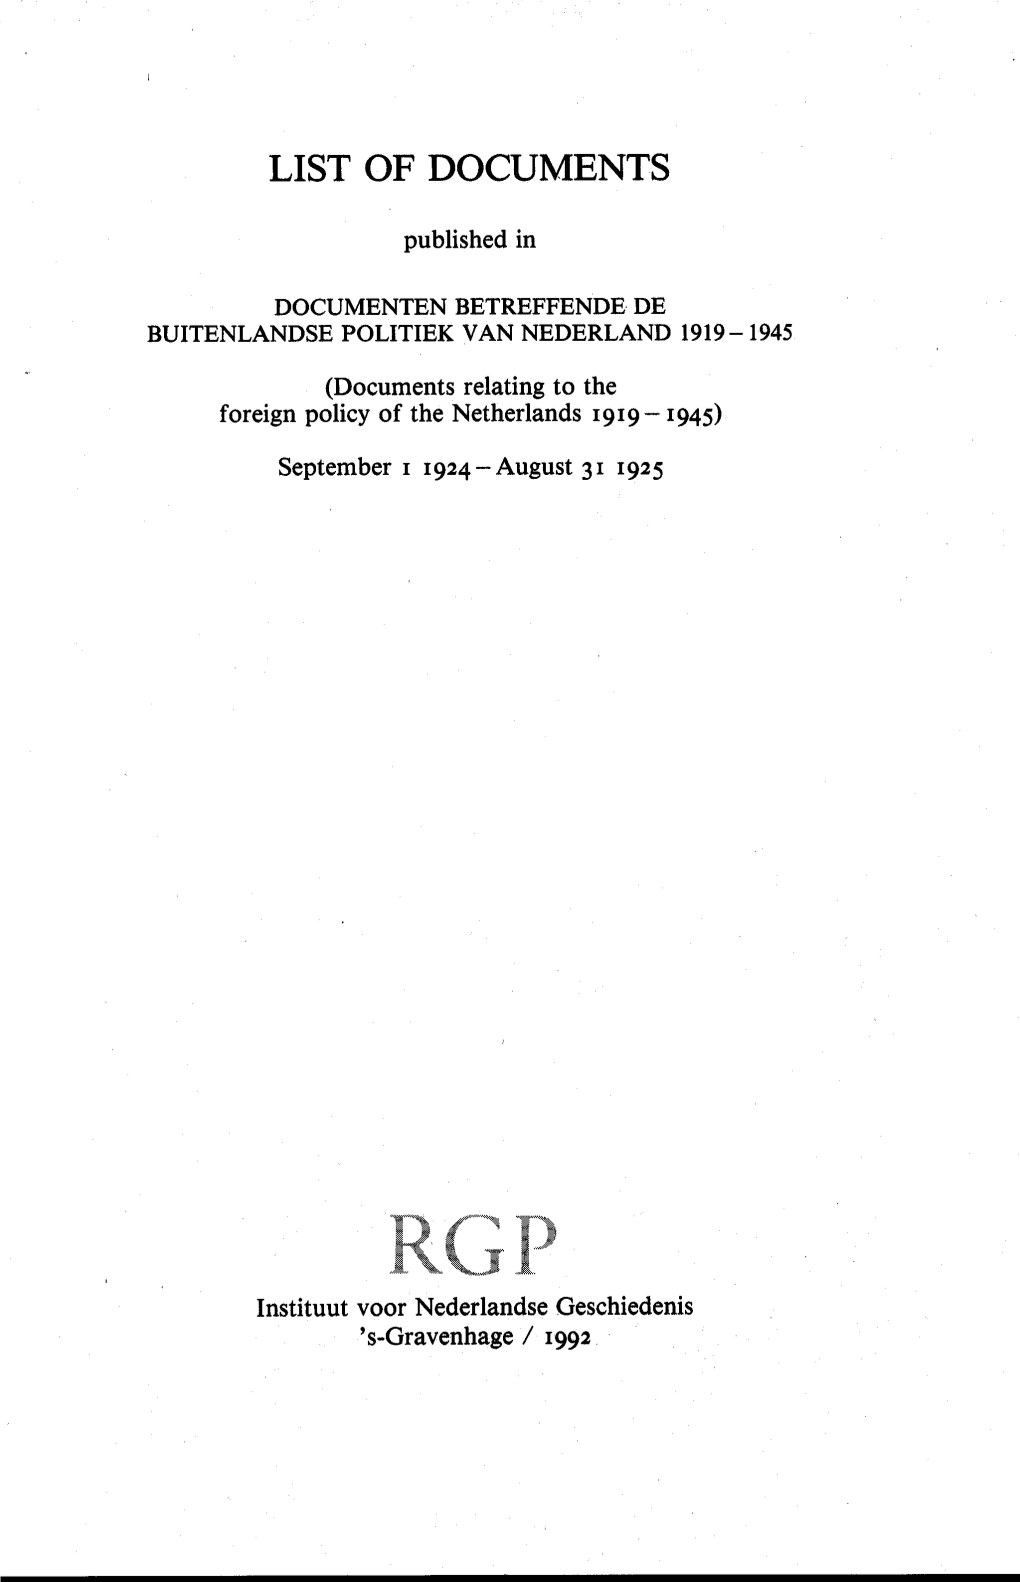 List of Documents 1 September 1924